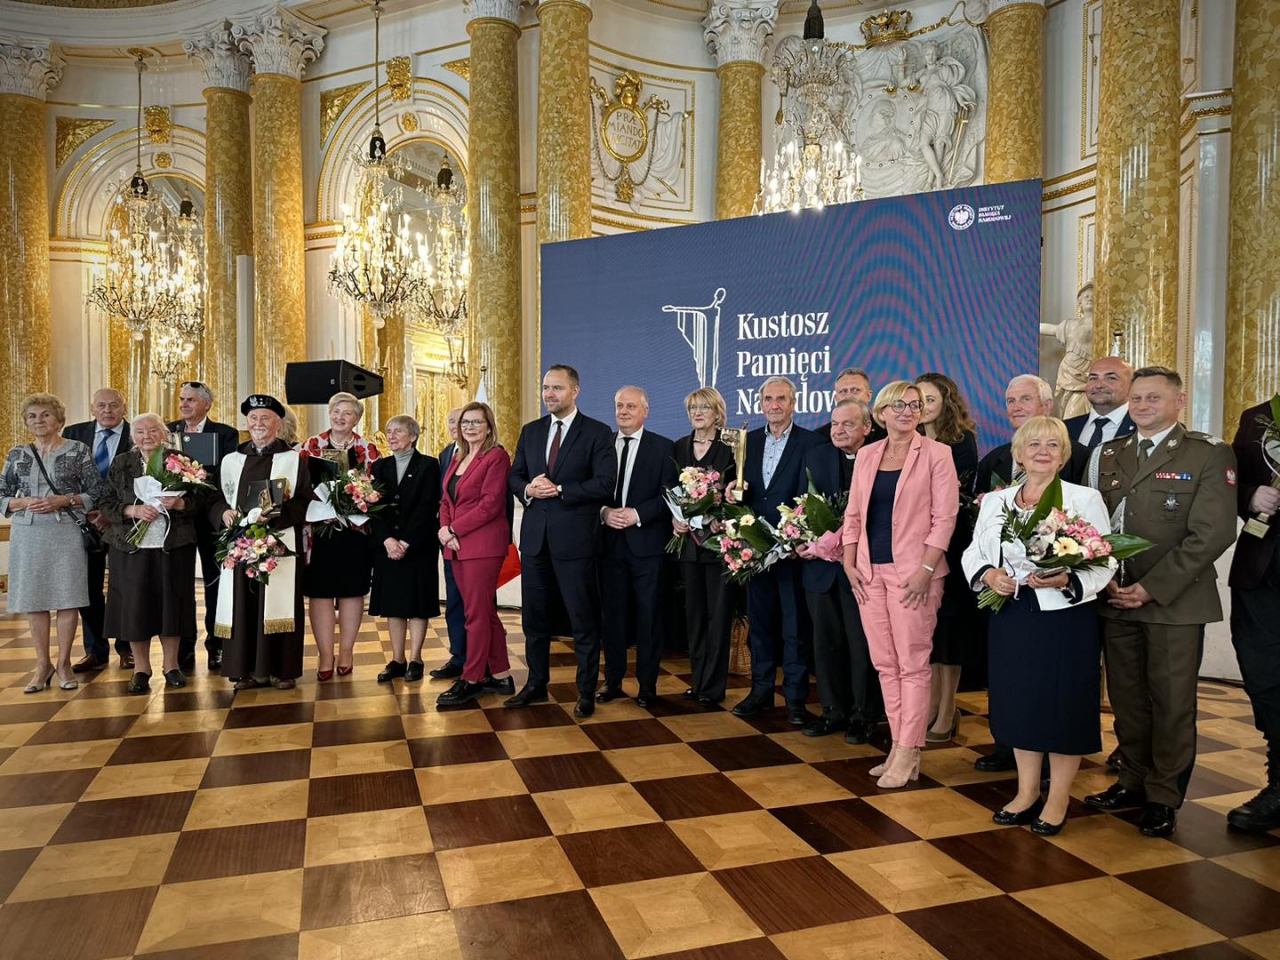 Laureaci nagrody w sali Zamku Królewskiego